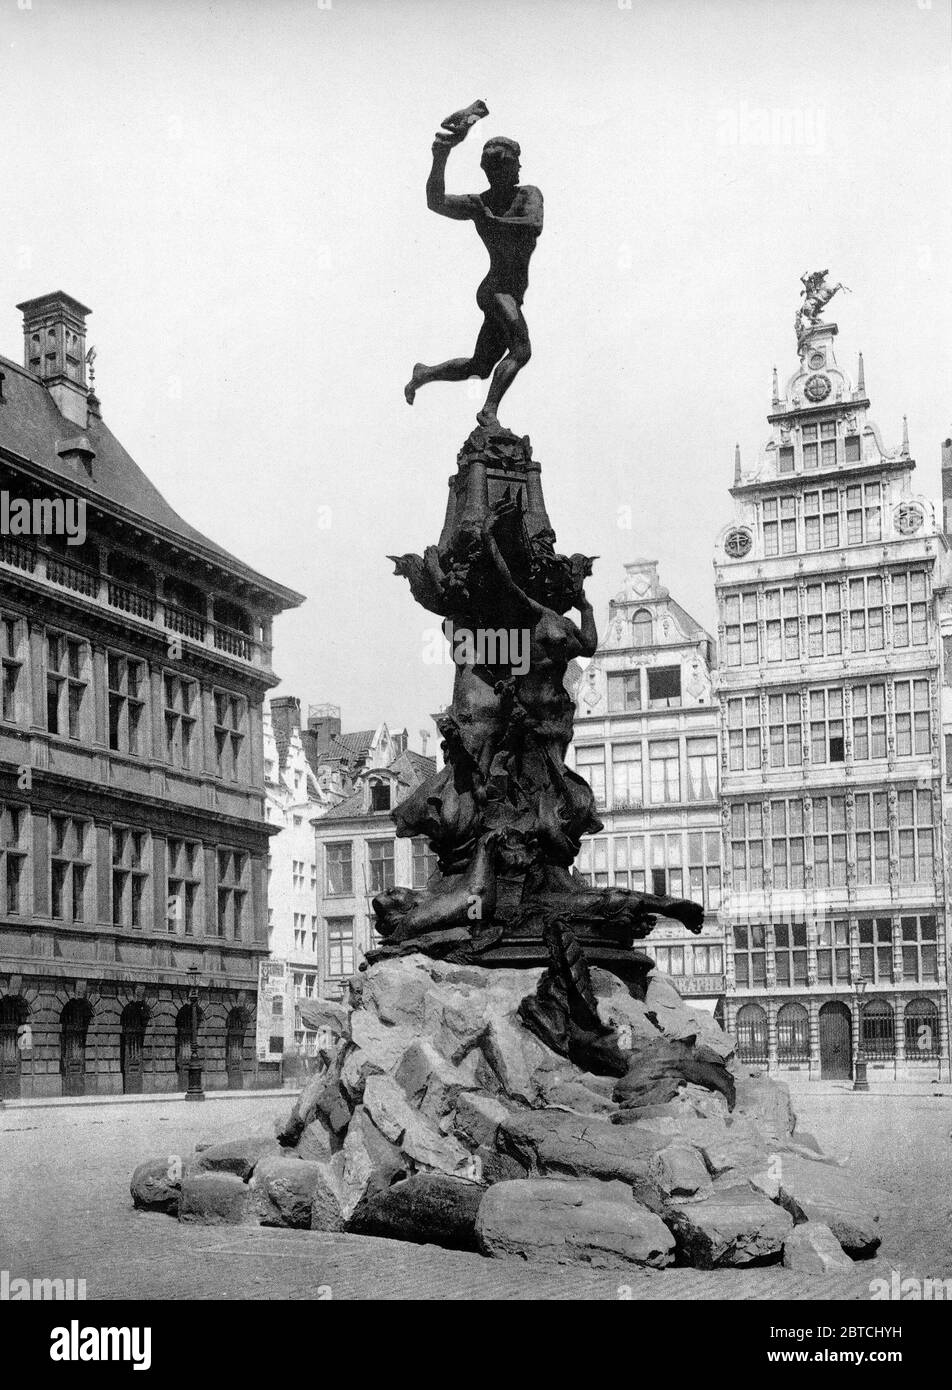 Brabo monument, Antwerp, Belgium ca. 1890-1900 Stock Photo